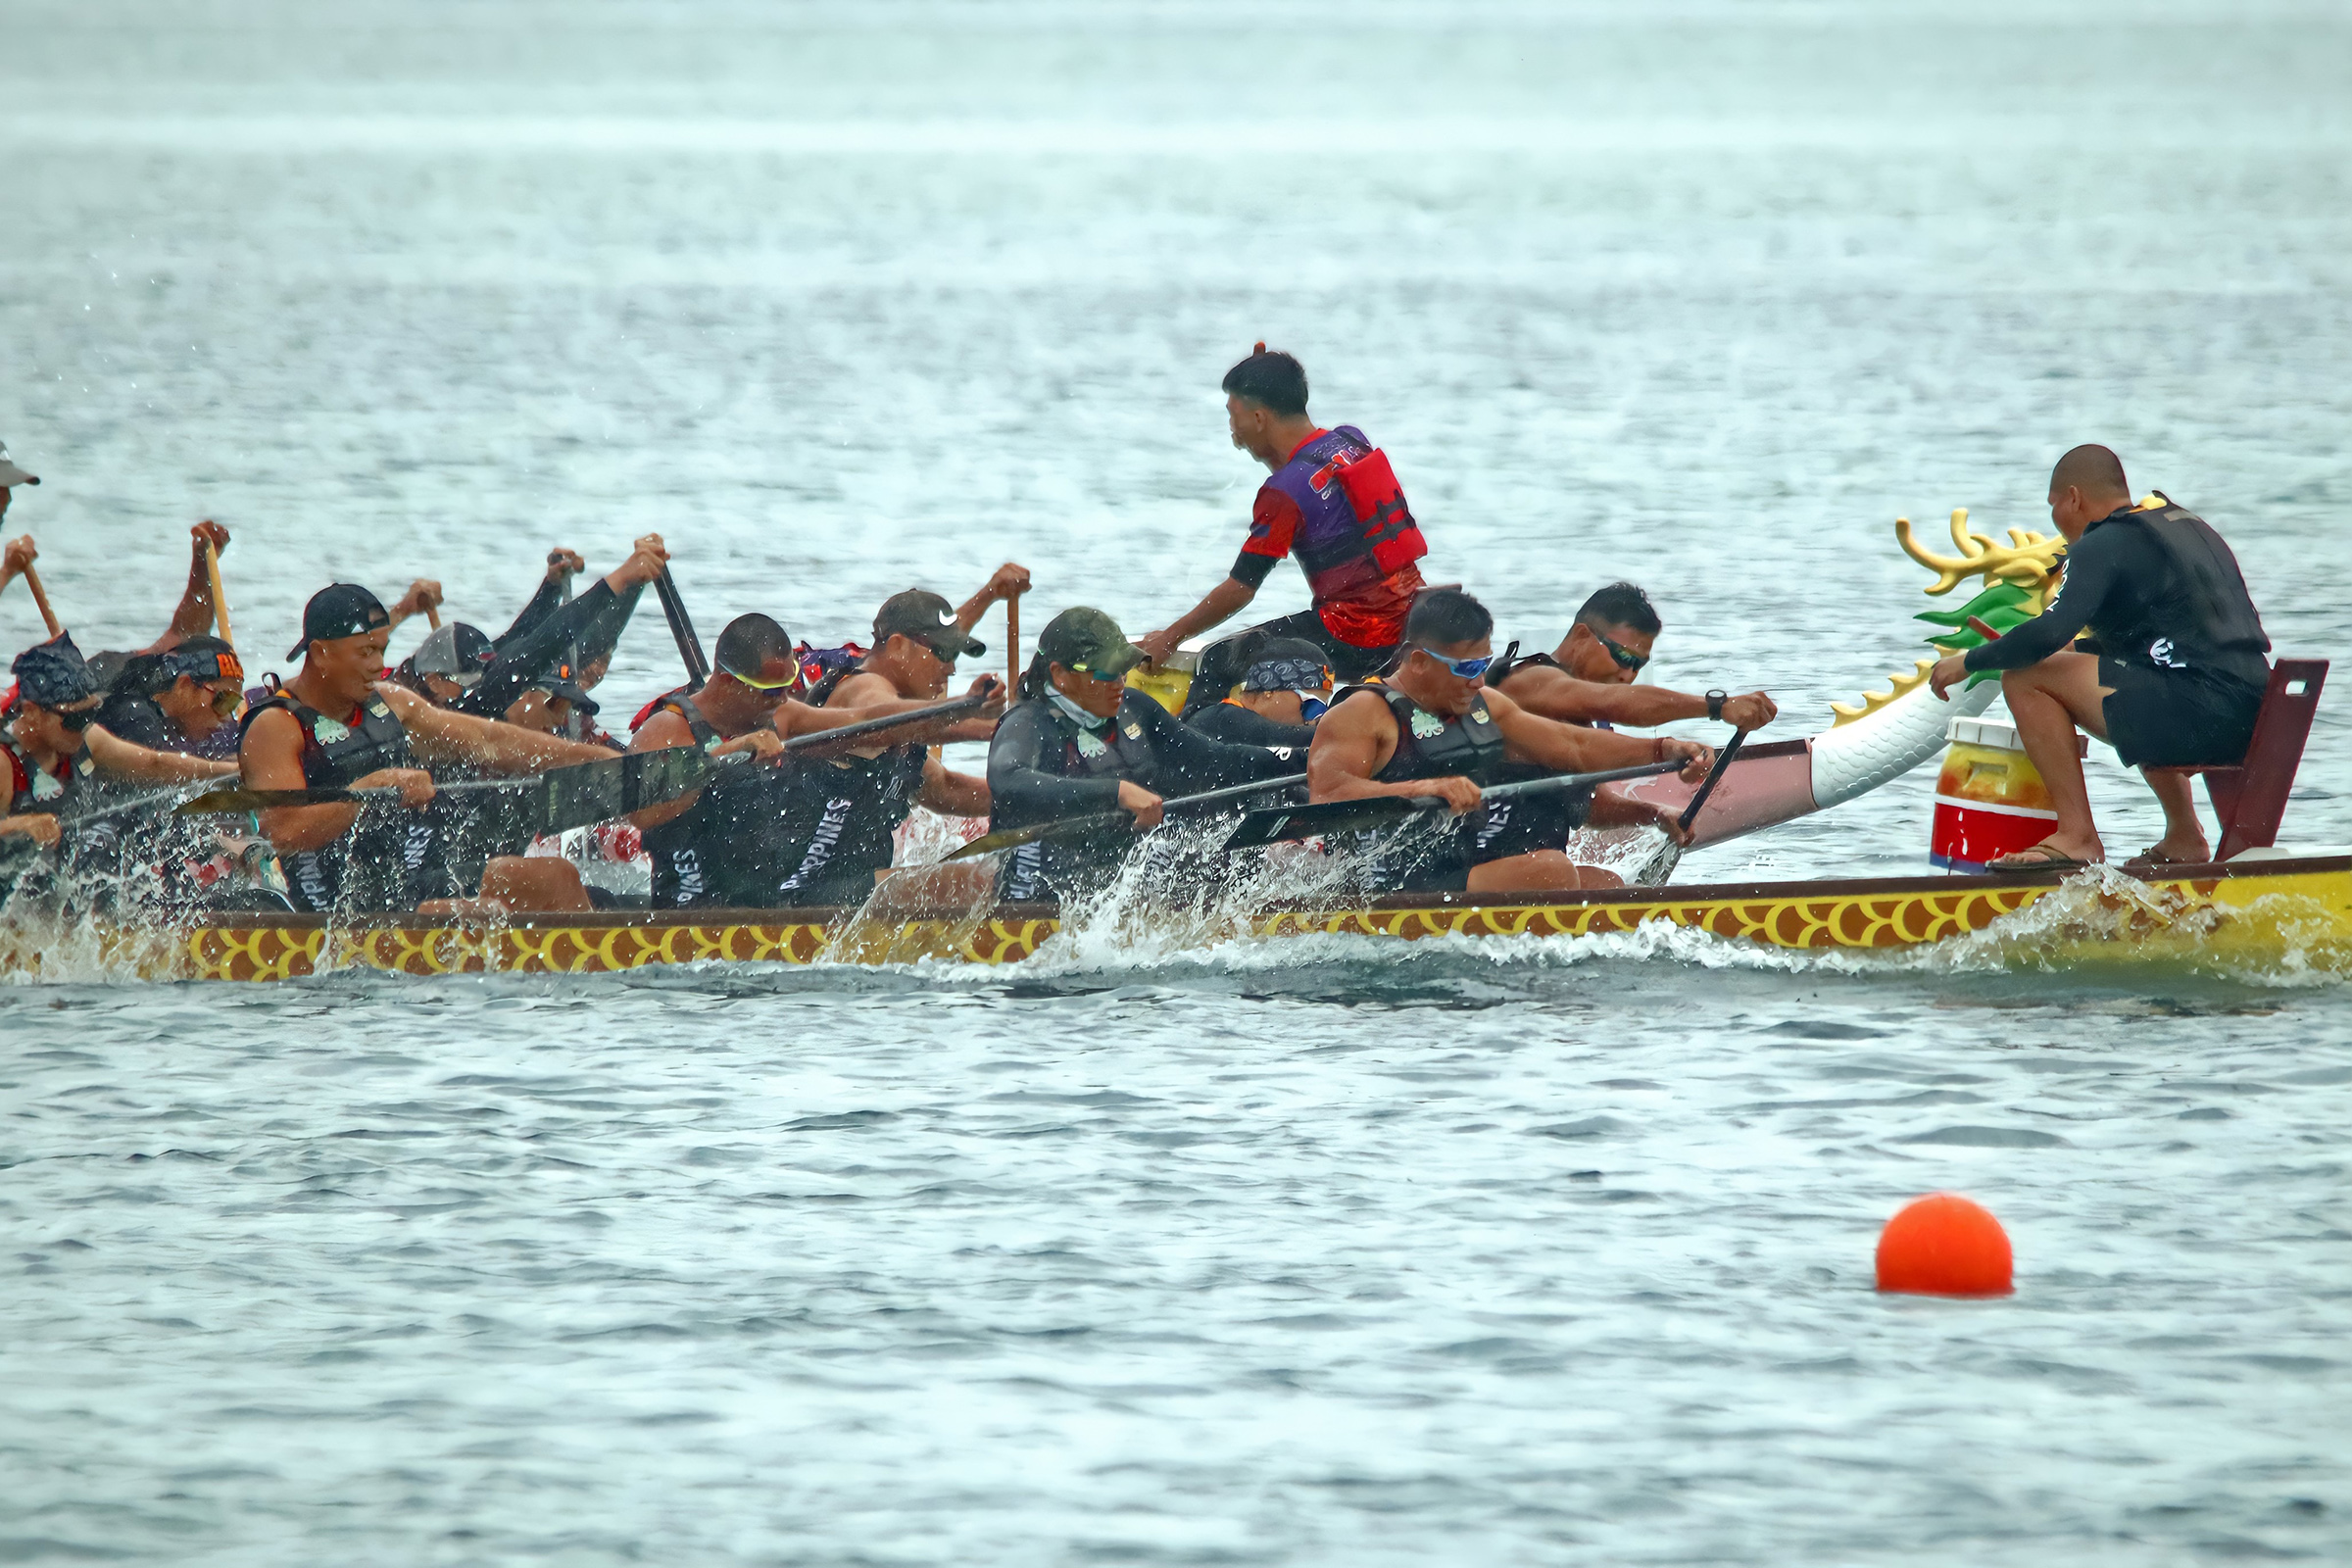 Para pendayung tentara mendominasi perlombaan perahu naga Siargao